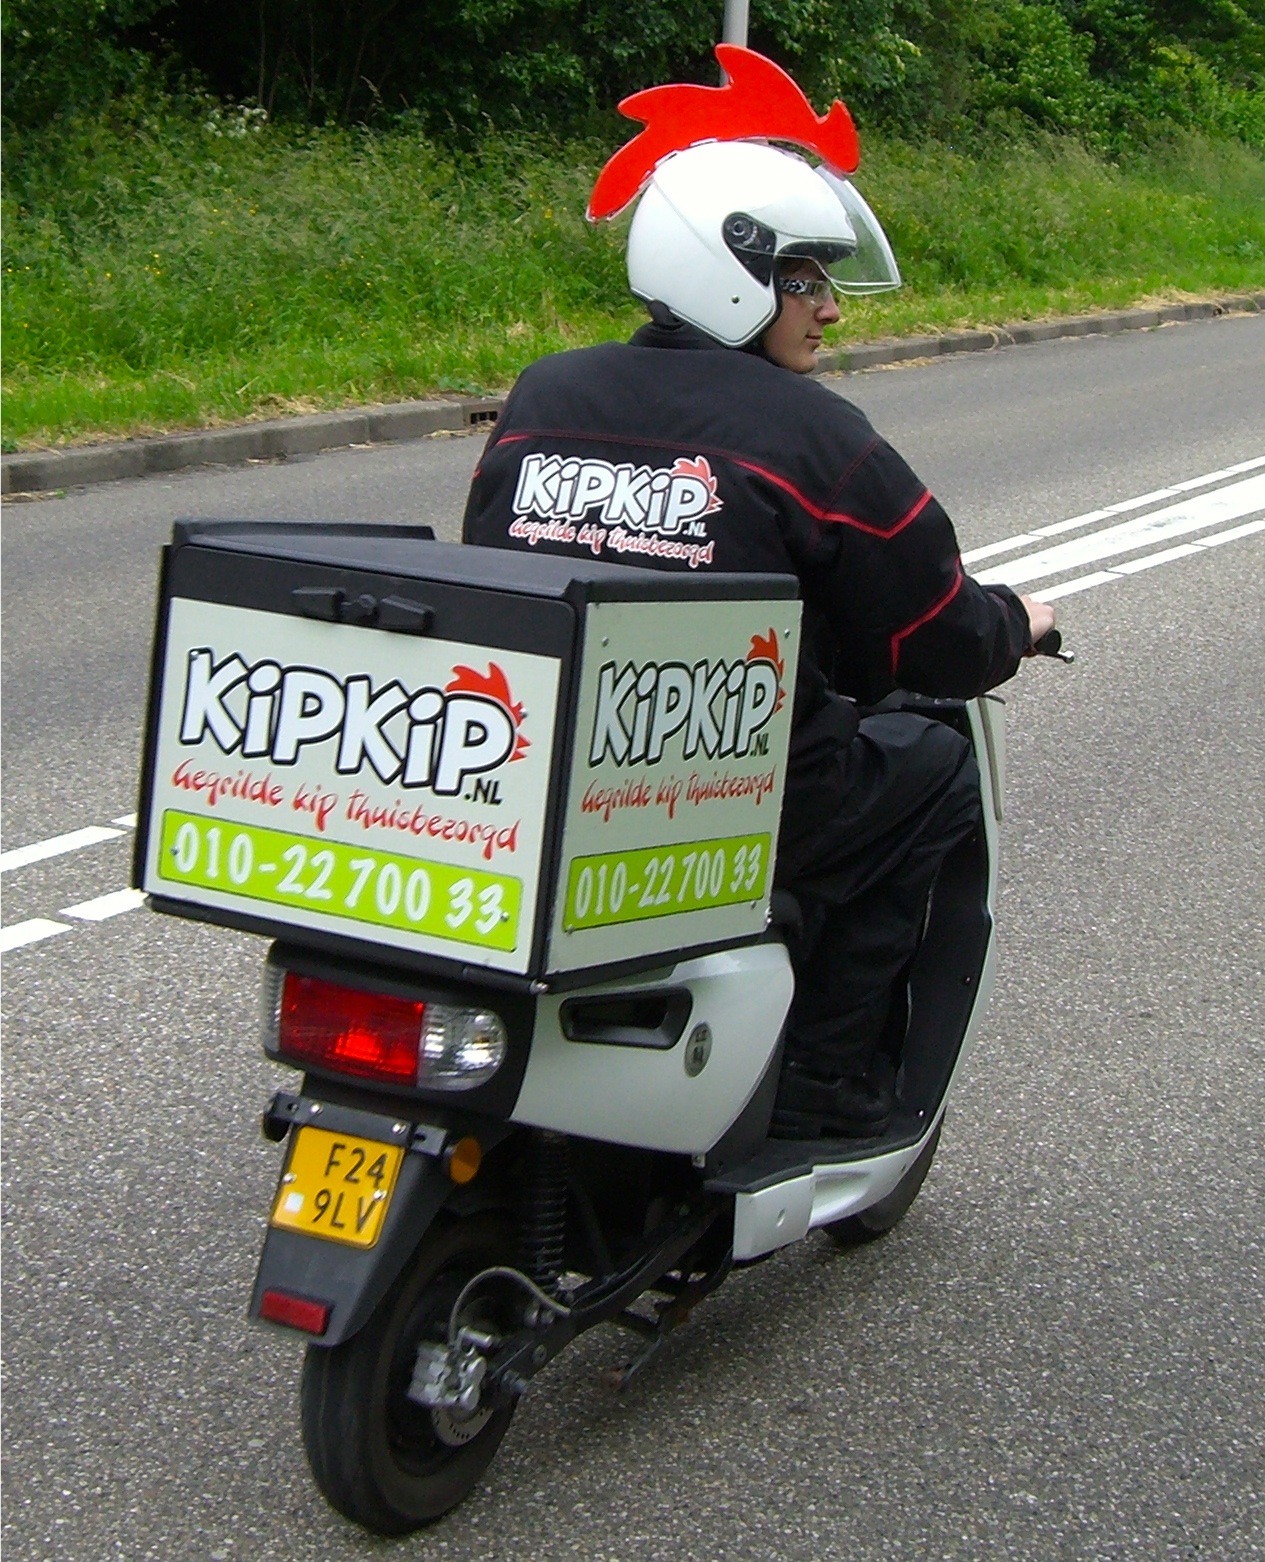 De bezorgers van KipKip.nl zijn niet te missen met hun grappige helmen met rode hanenkam (bron: FranchiseFormules.NL)